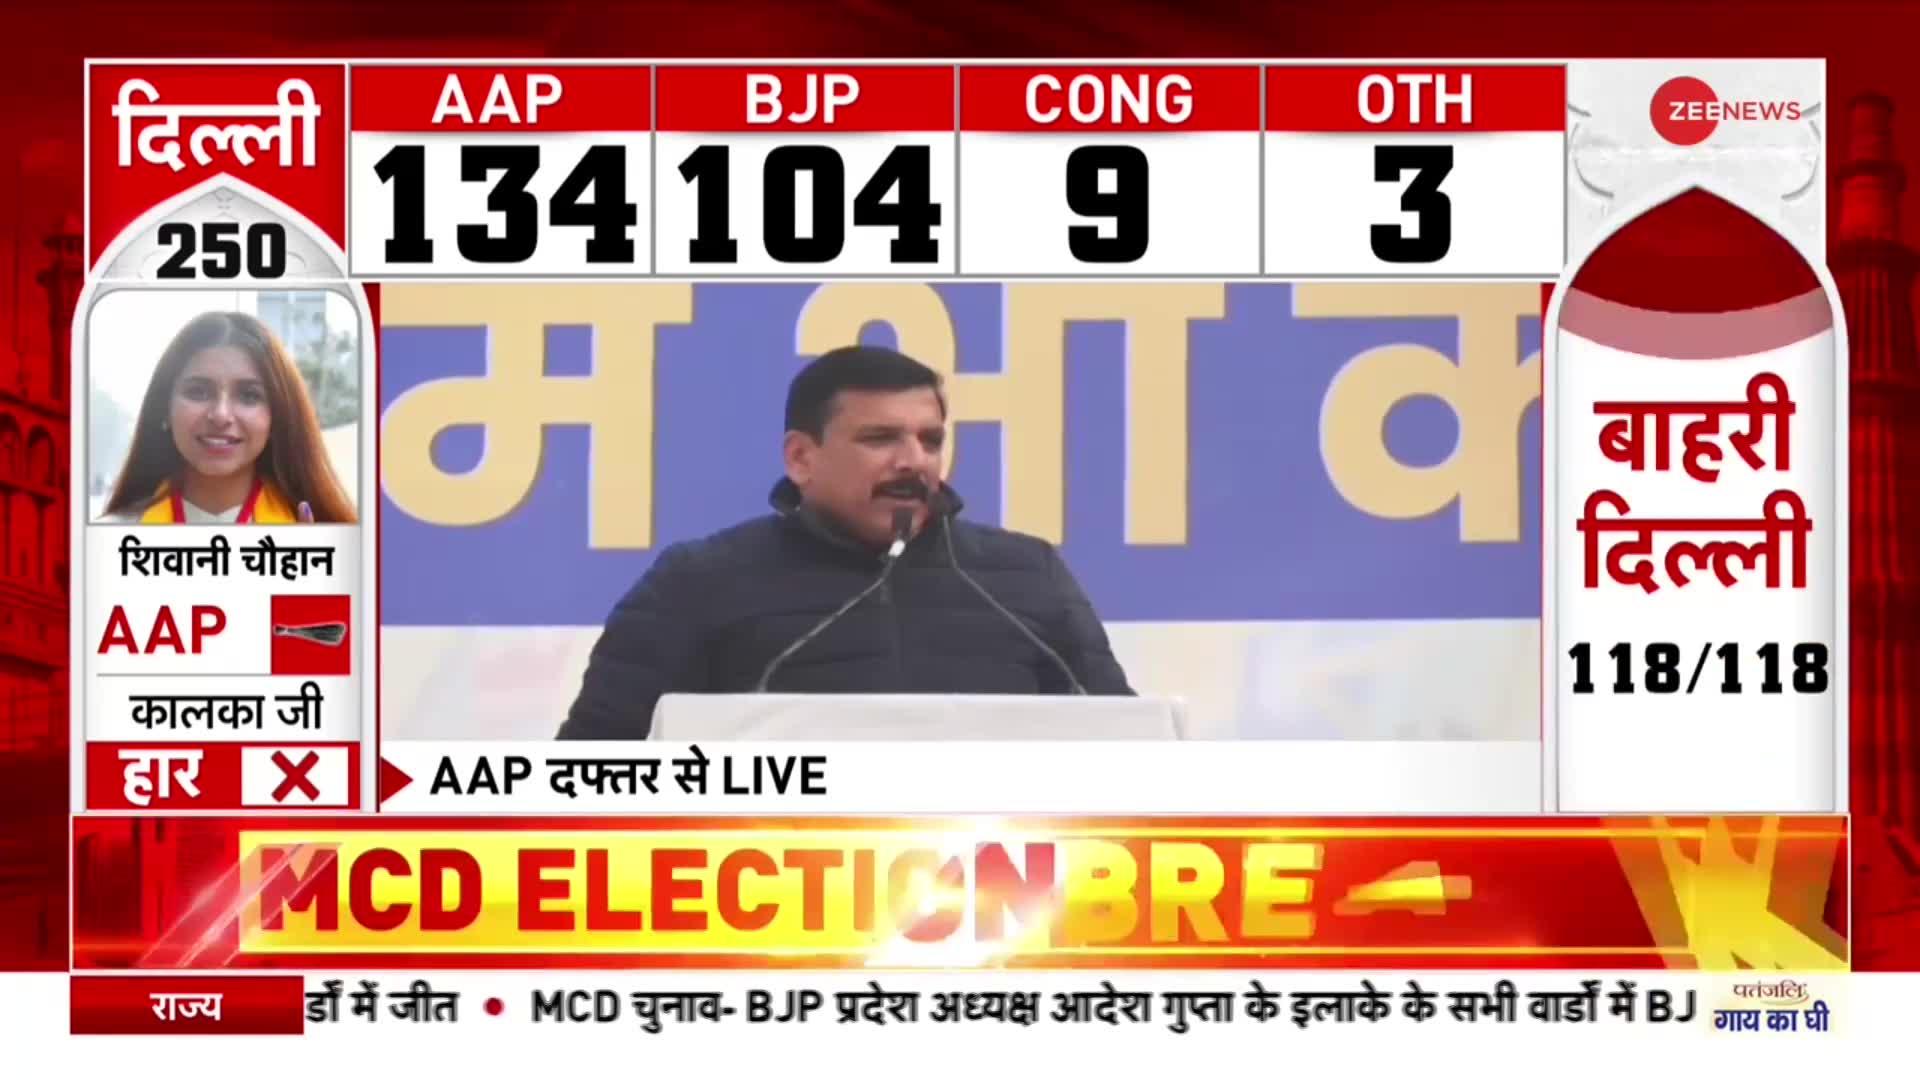 MCD Election Result : BJP की 15 साल की बादशाहत खत्म, MCD में AAP ने मारी बाजी | AAP | BJP